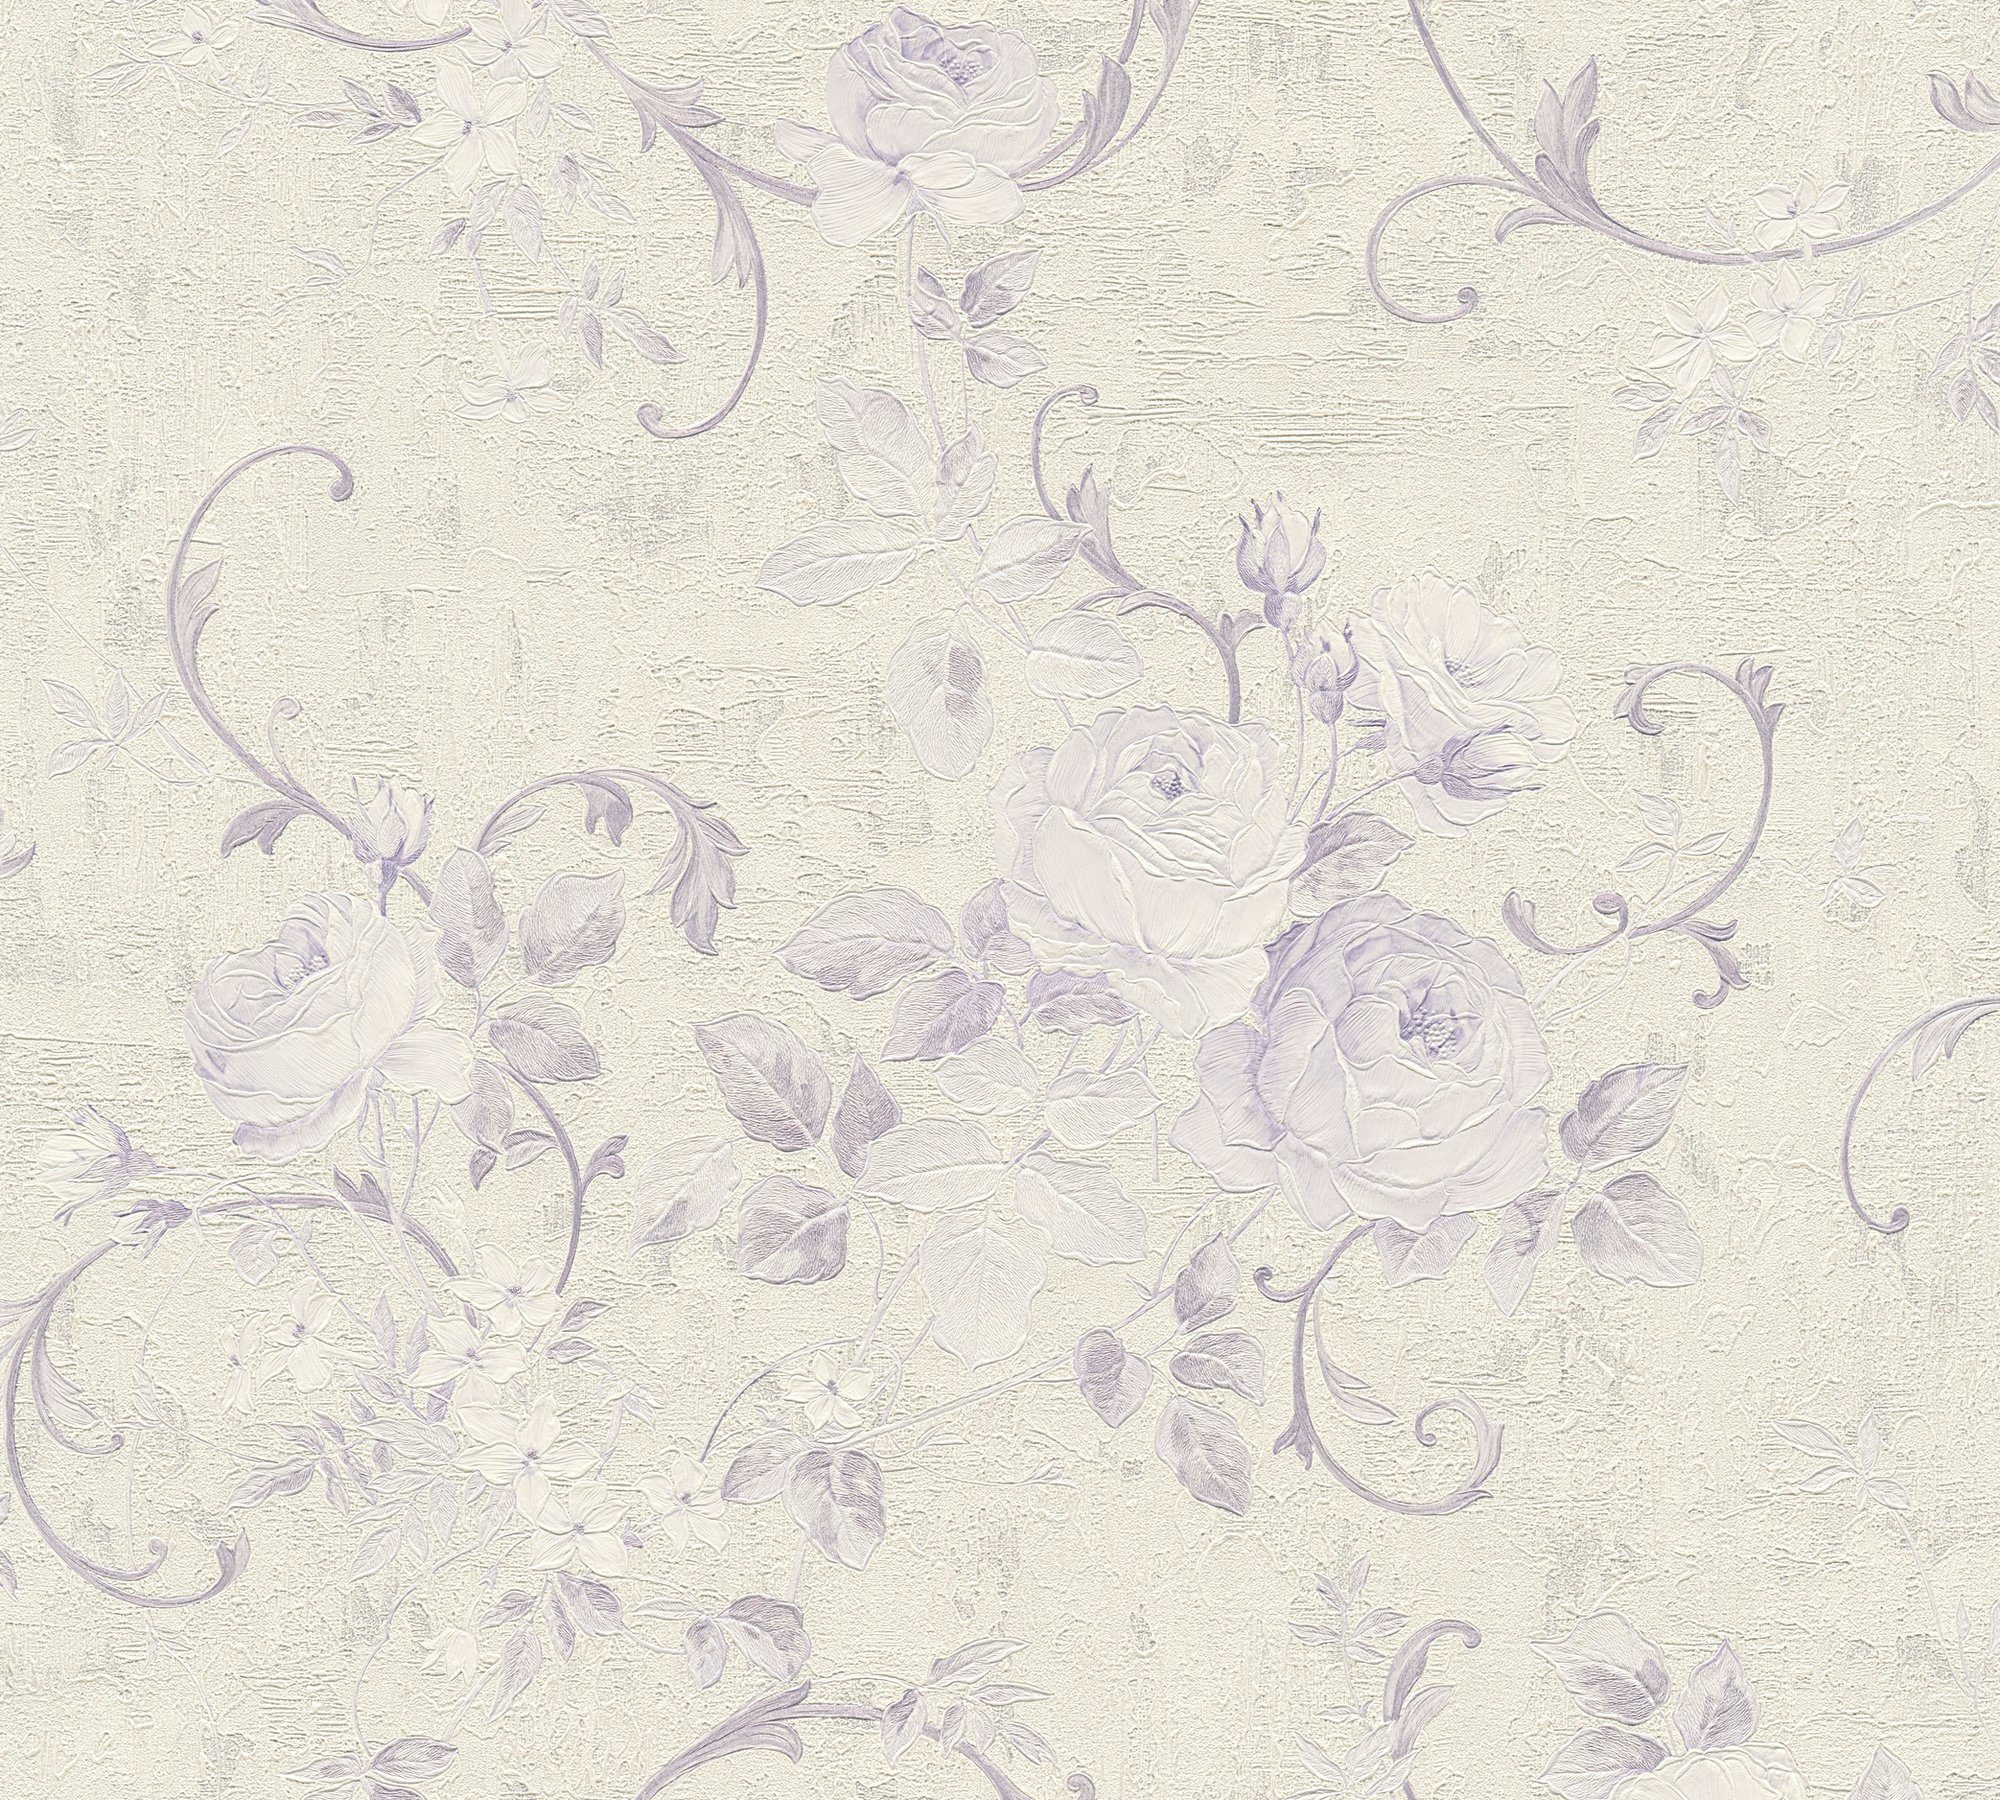 Blumen A.S. floral, Vliestapete Tapete Création Barock creme/violett Romantico floral, romantisch